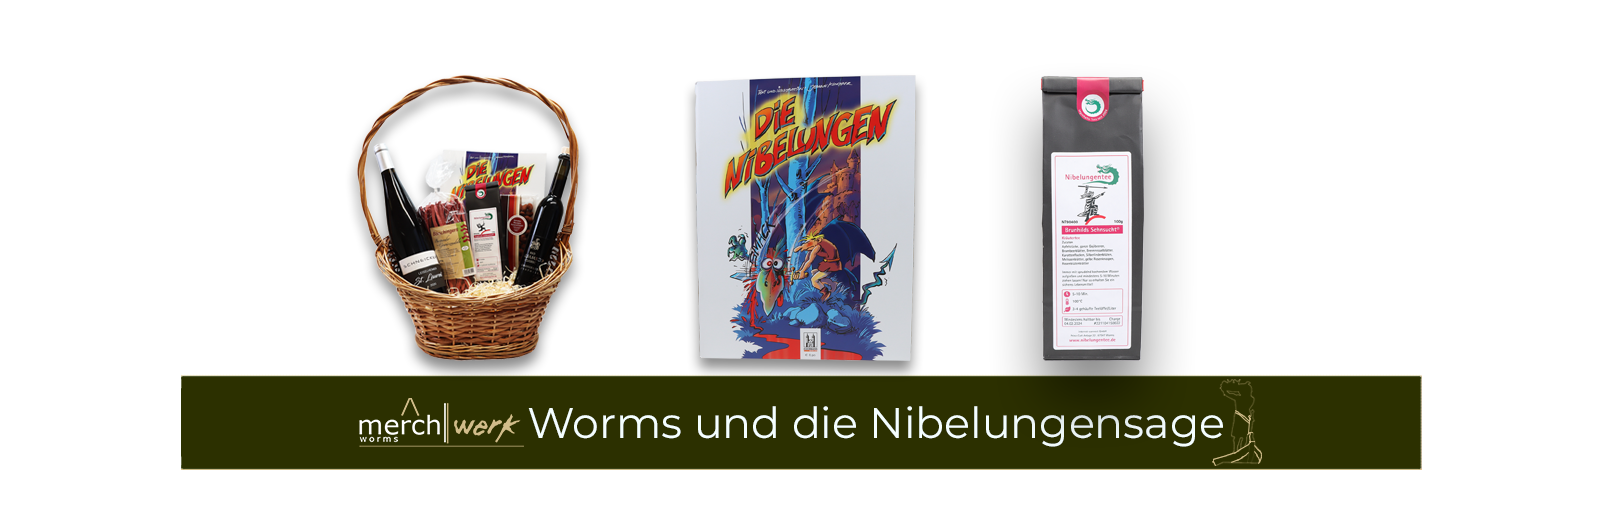 Worms und die Nibelungensage